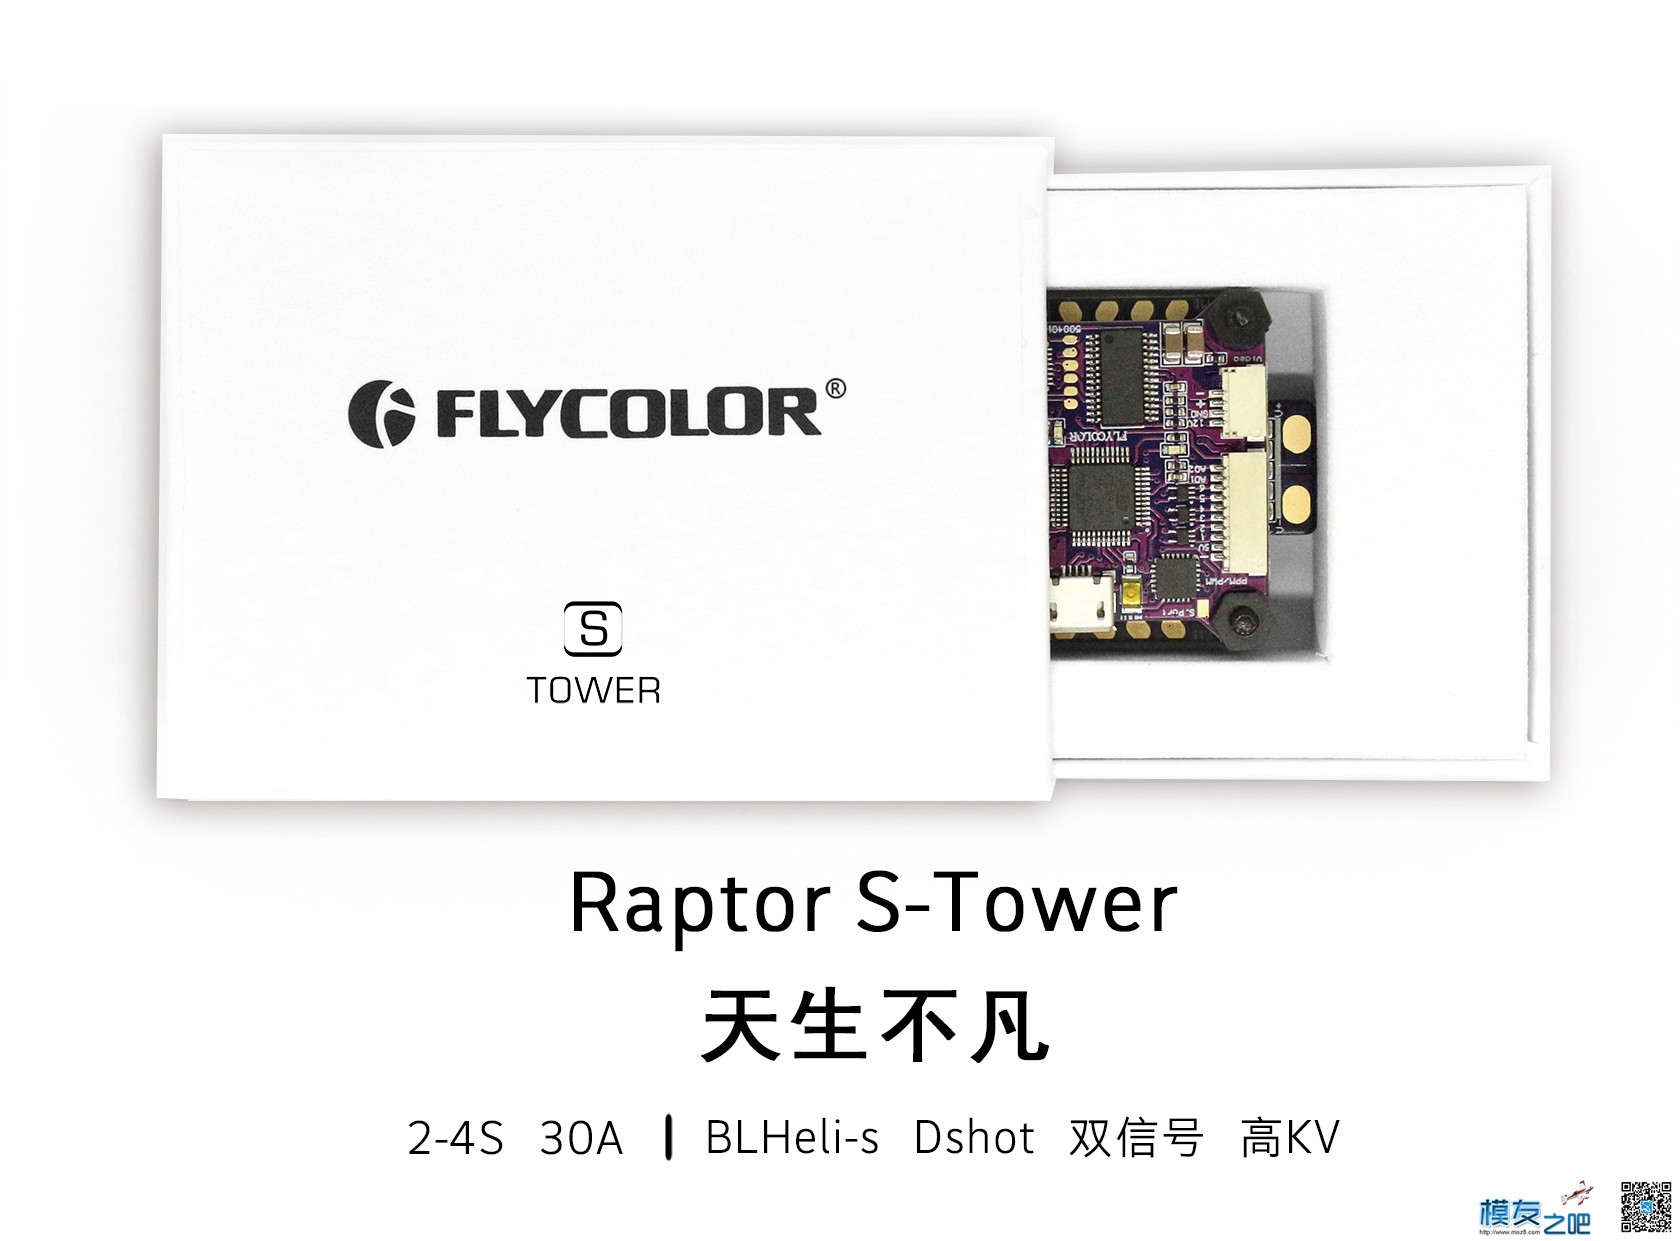 飞盈佳乐BLHeli-s塔式产品——Raptor S-Tower测试 飞控,电调,电机,机器人,航拍 作者:飞天狼 6658 